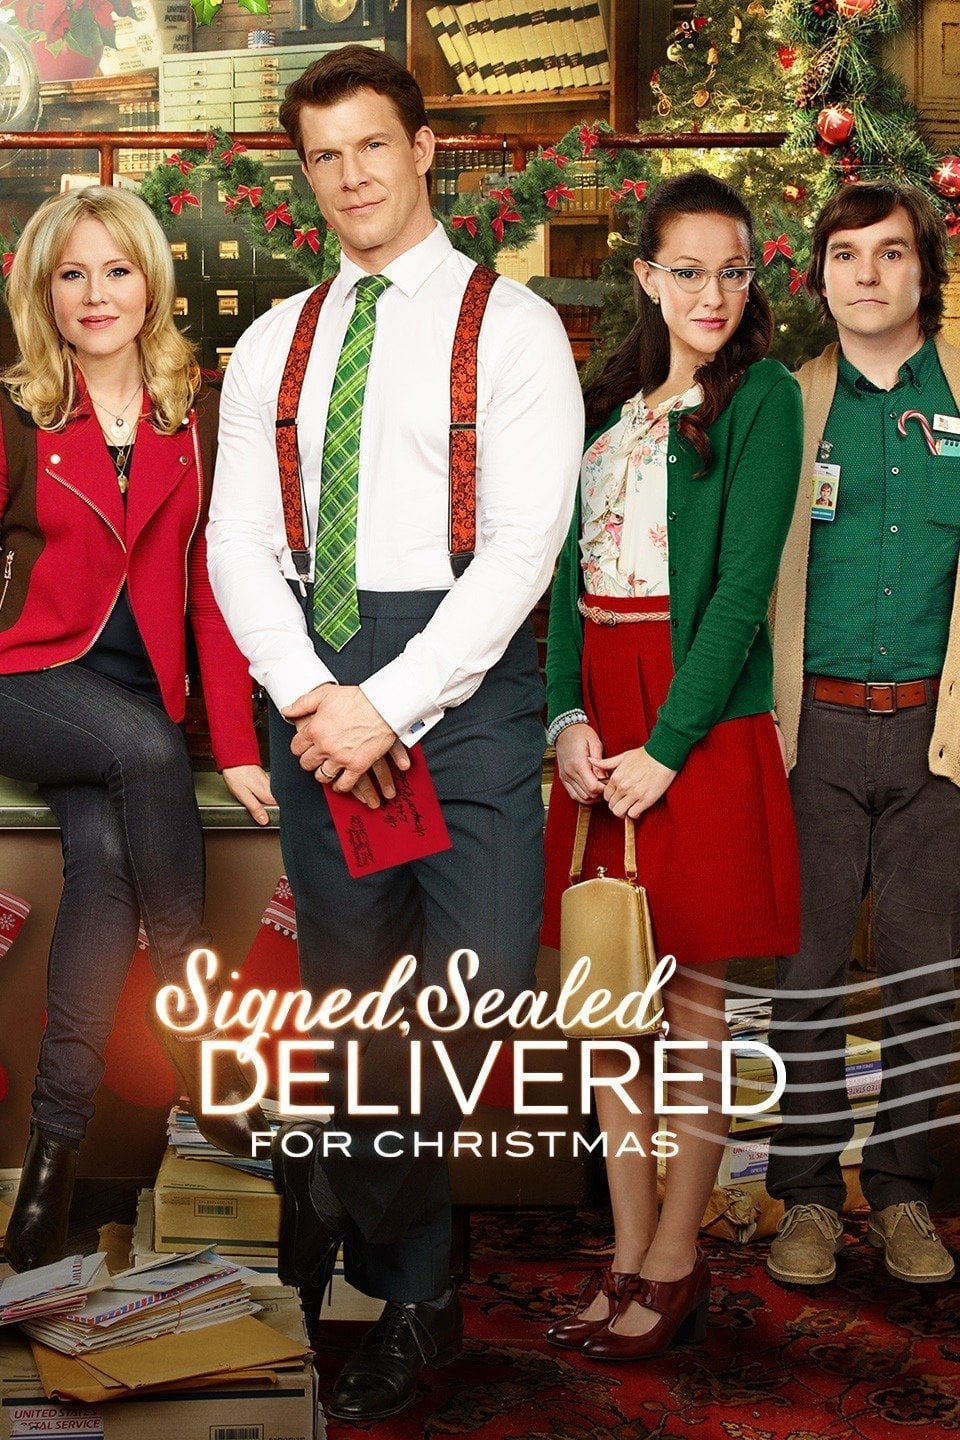 Signed, Sealed, Delivered for Christmas (2014)